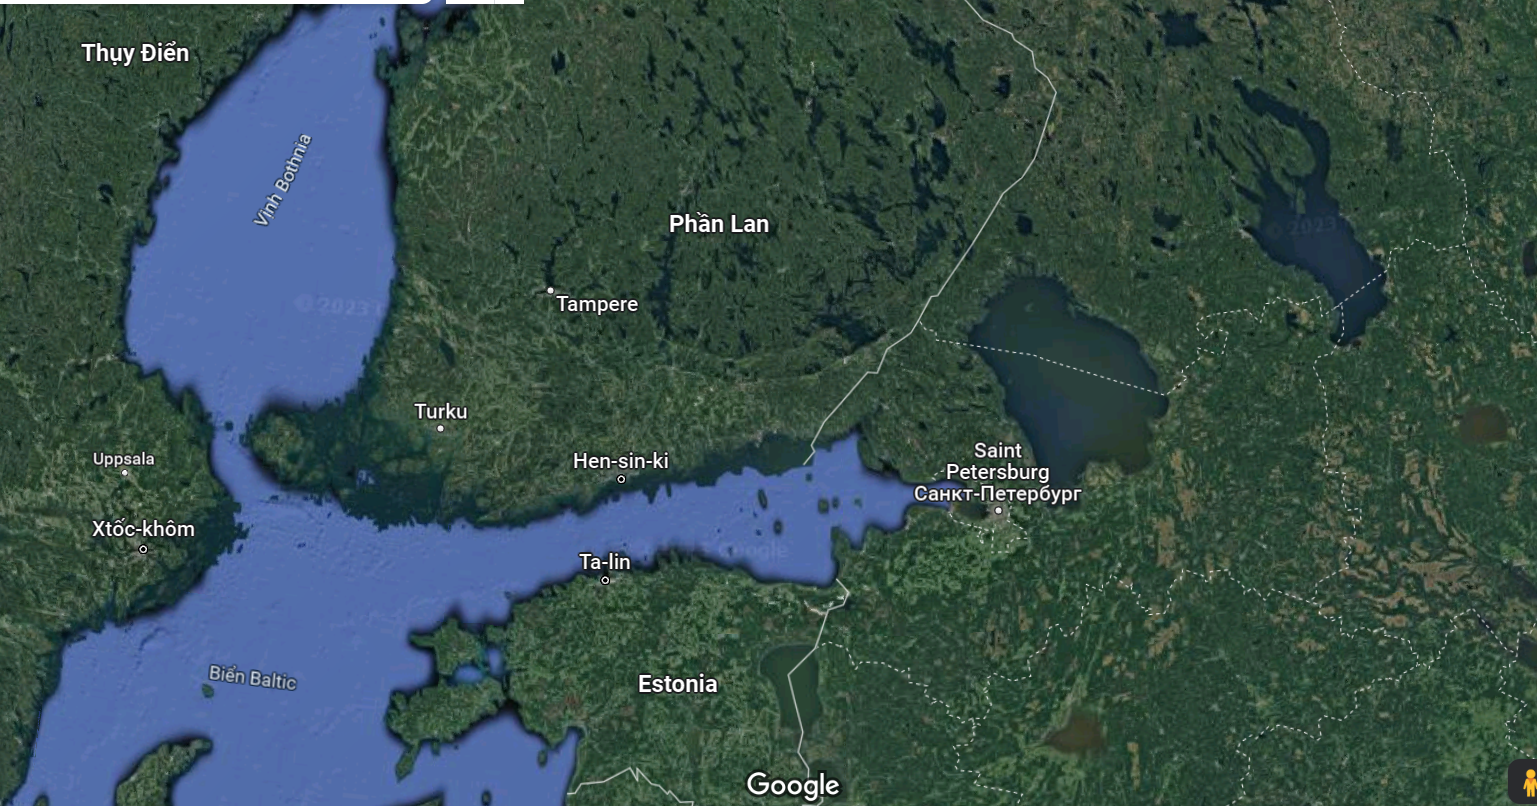 Phần Lan có chung đường biên giới dài 1.300 km với Nga